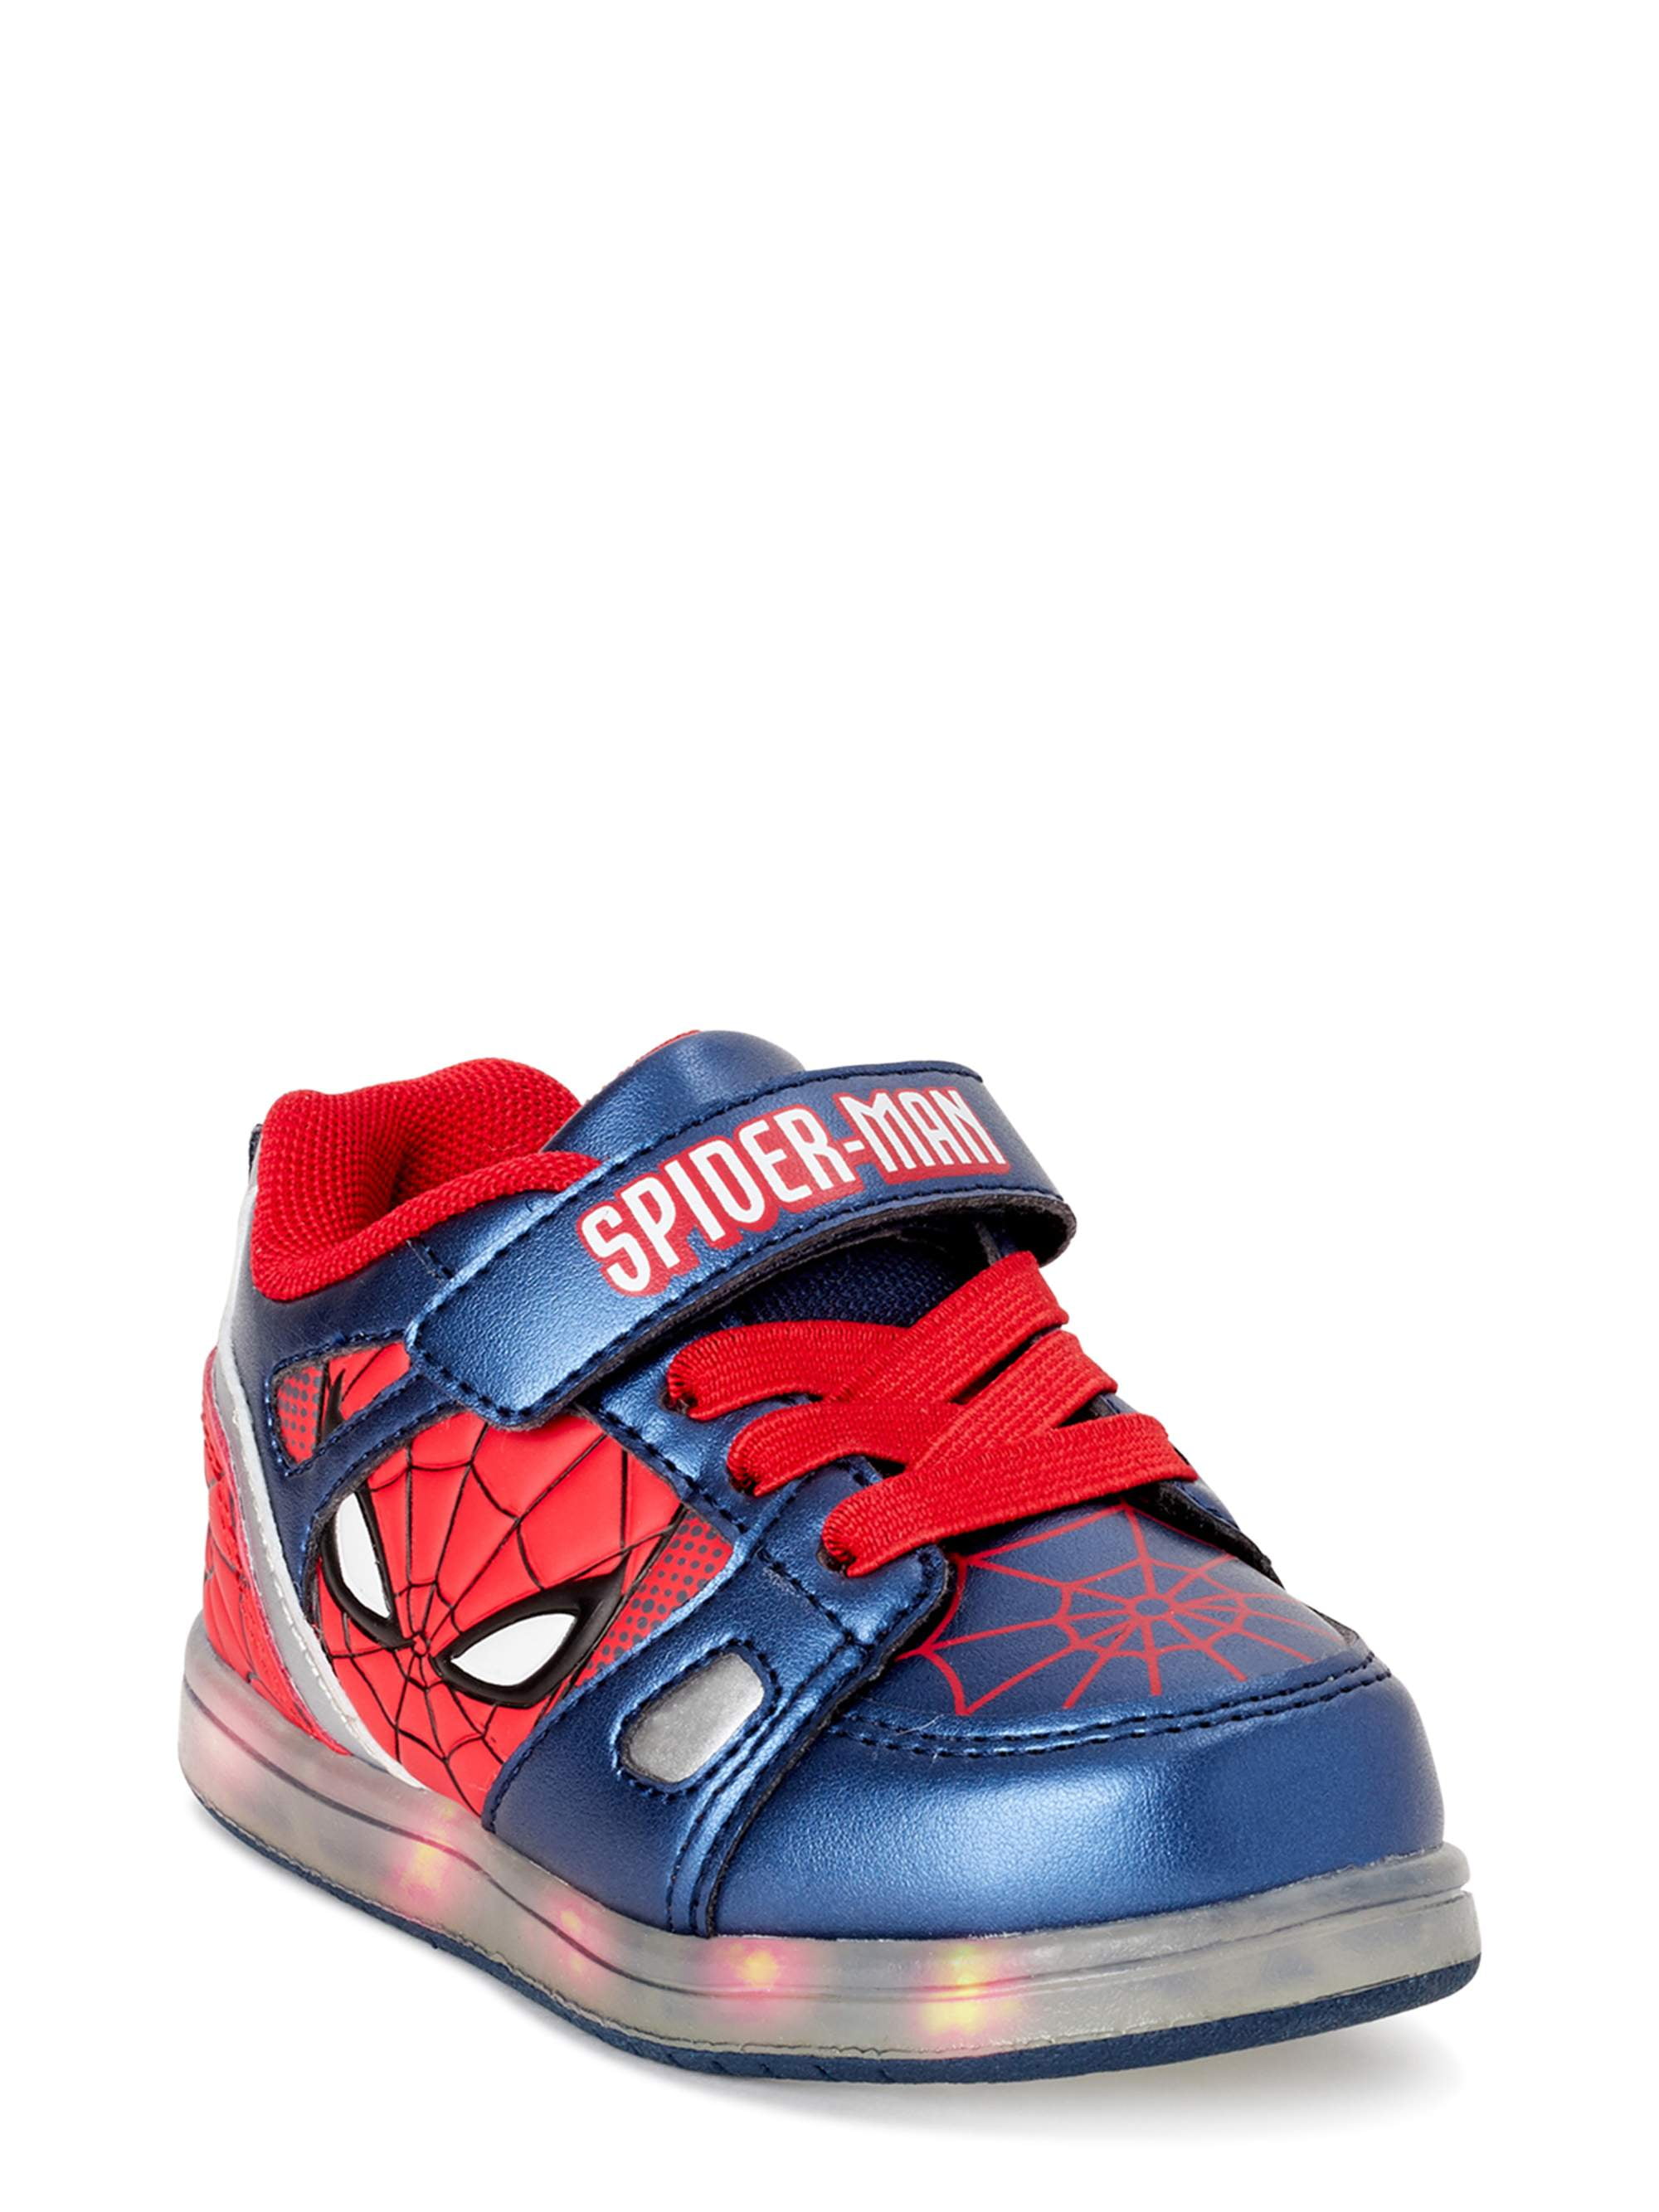 Toddler,Little/Big Kid TISGOTAN Boy Shoes Spider Sneaker Breathable Ligthweight Hook and Loop 